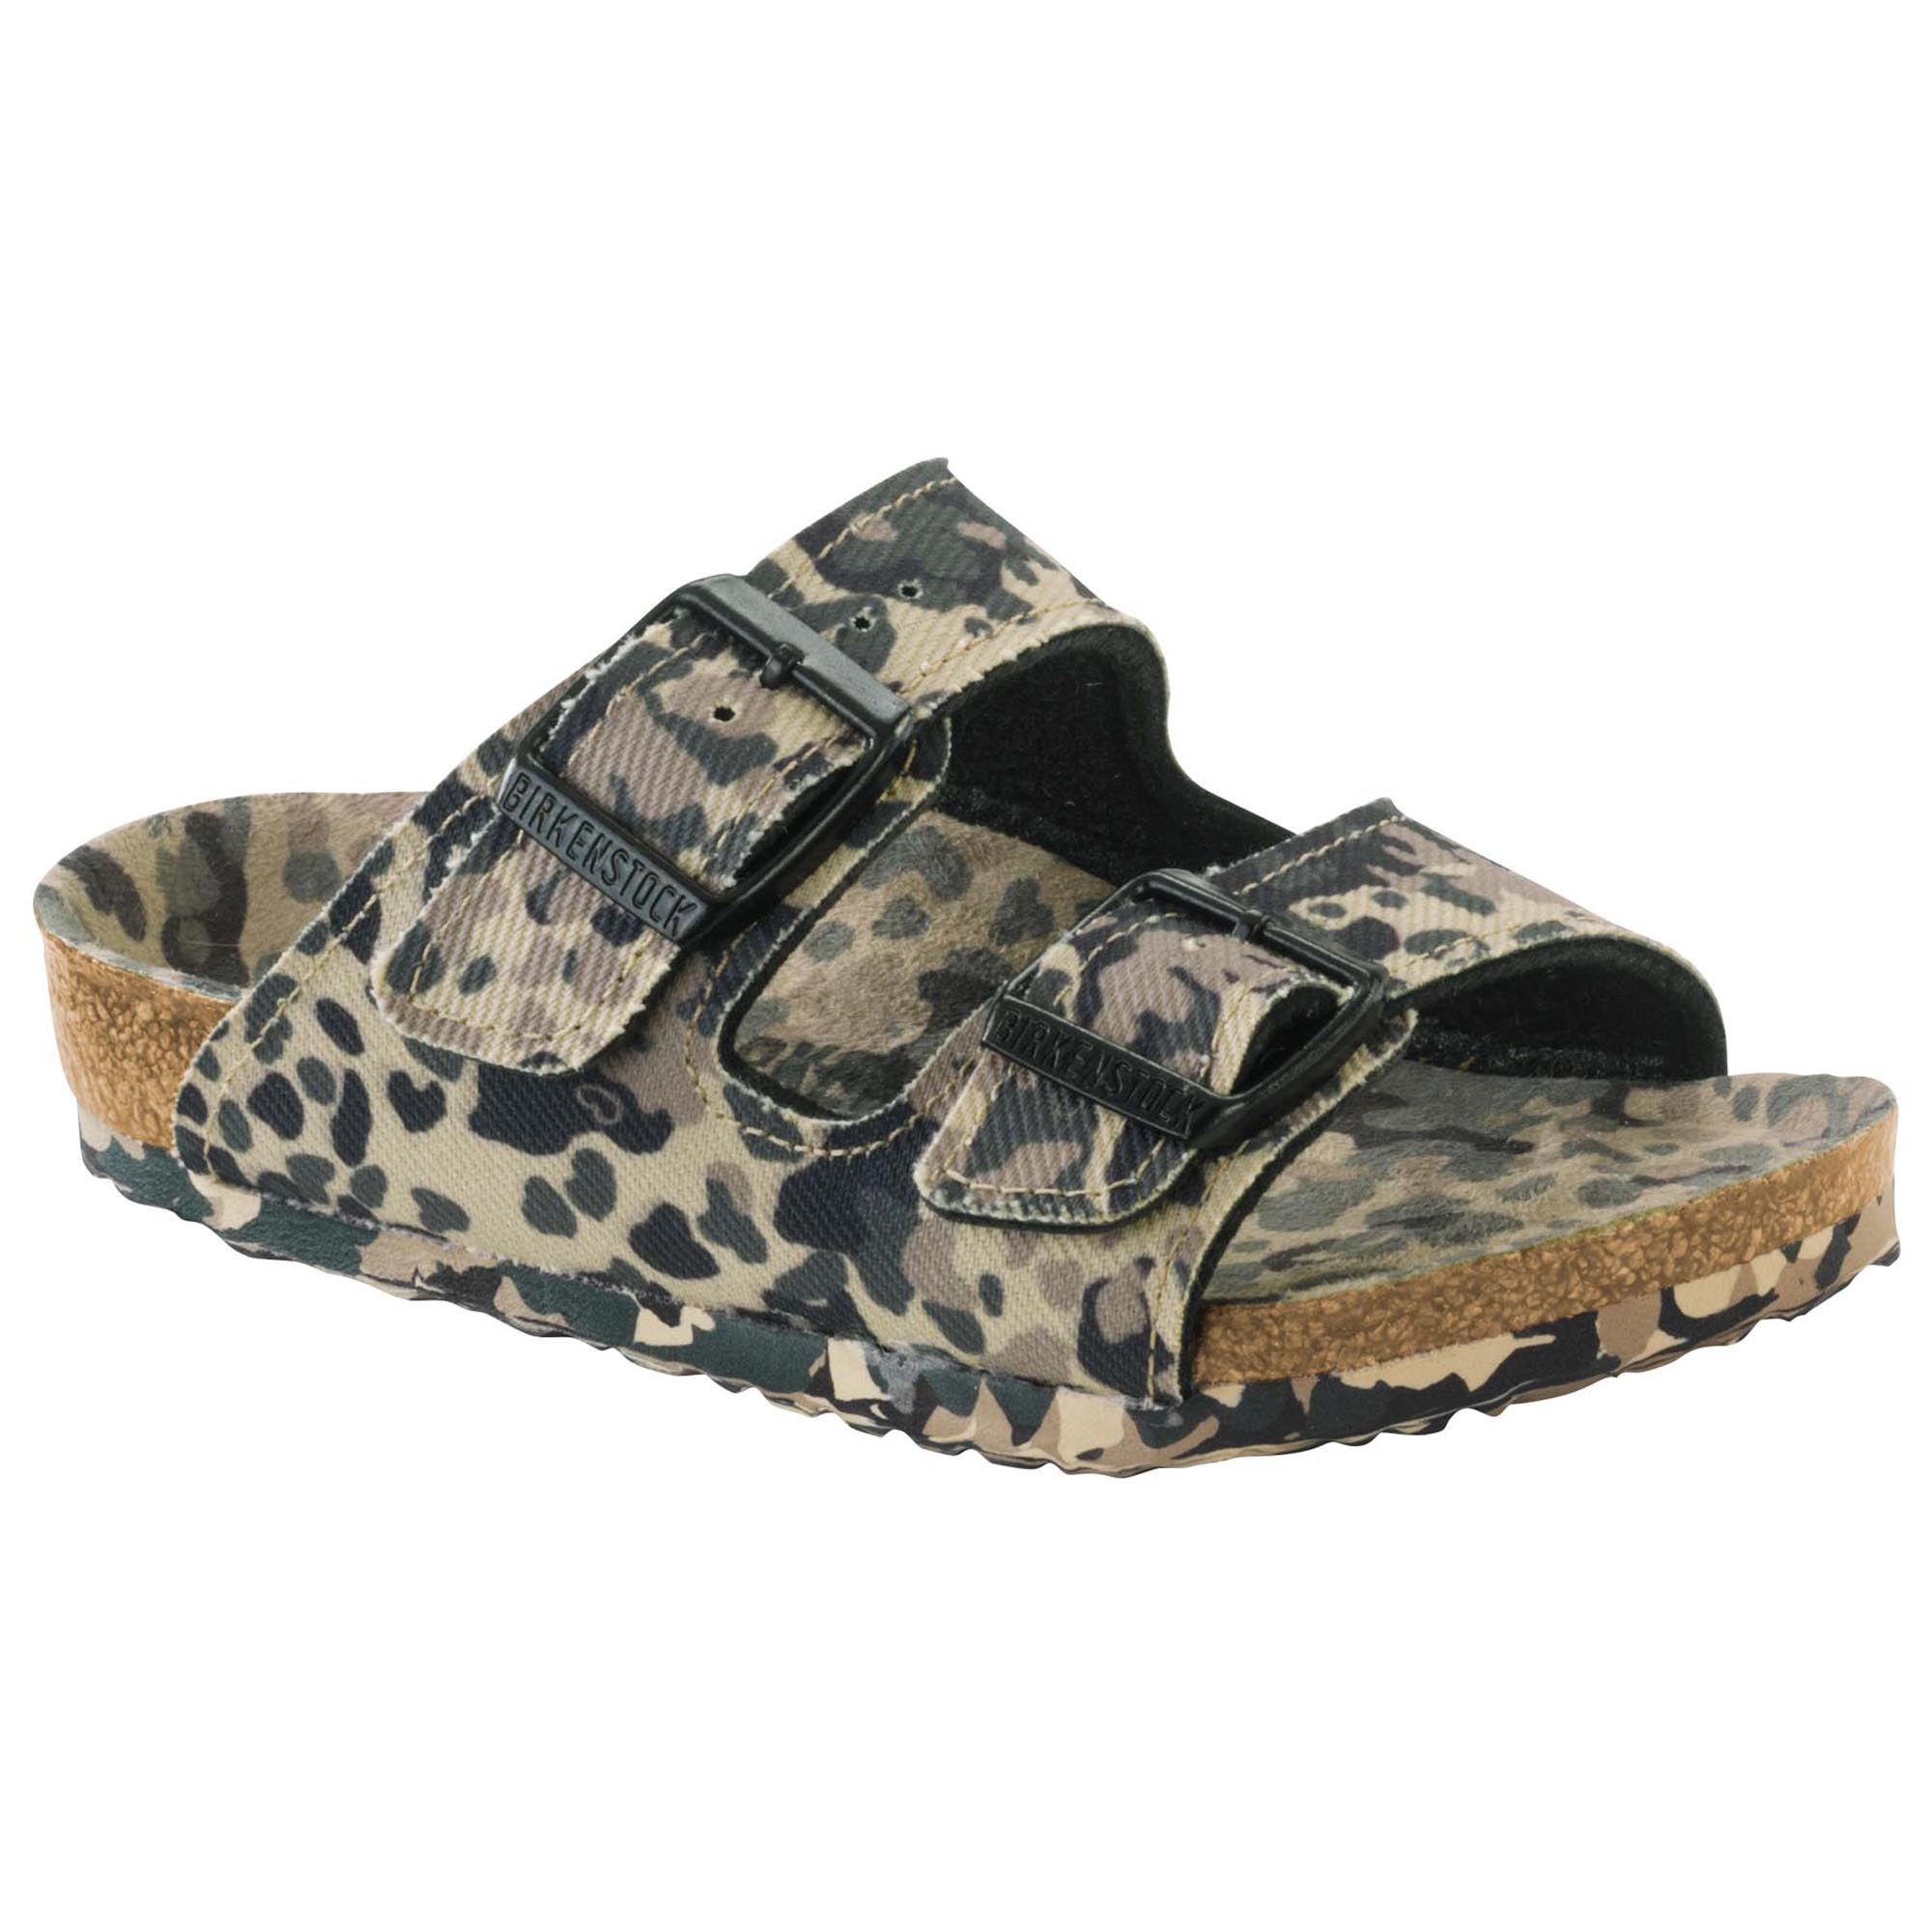 birkenstock camouflage sandals